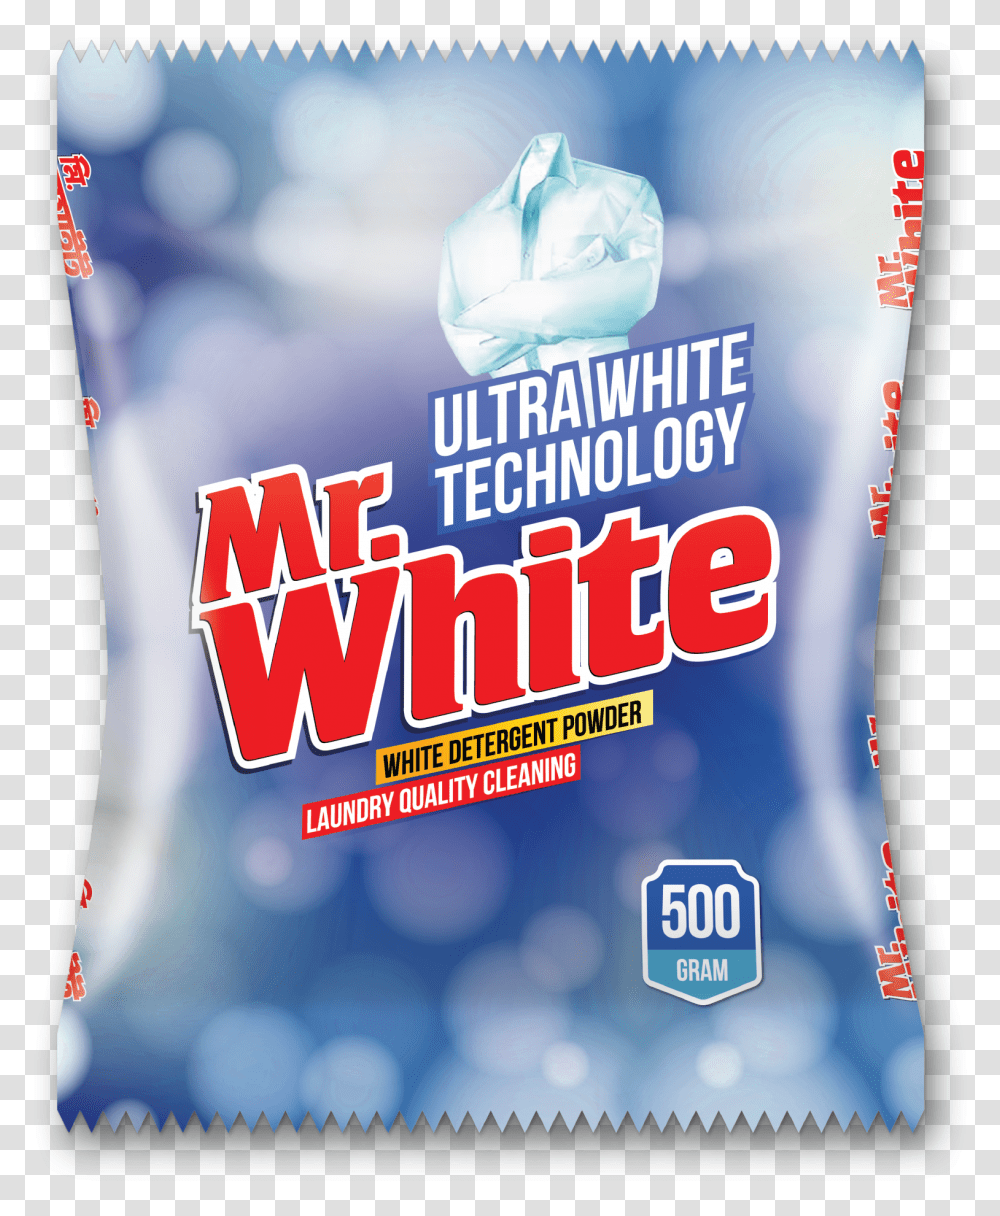 White Detergent Powder Mr White Detergent Powder, Advertisement, Poster, Flyer, Paper Transparent Png